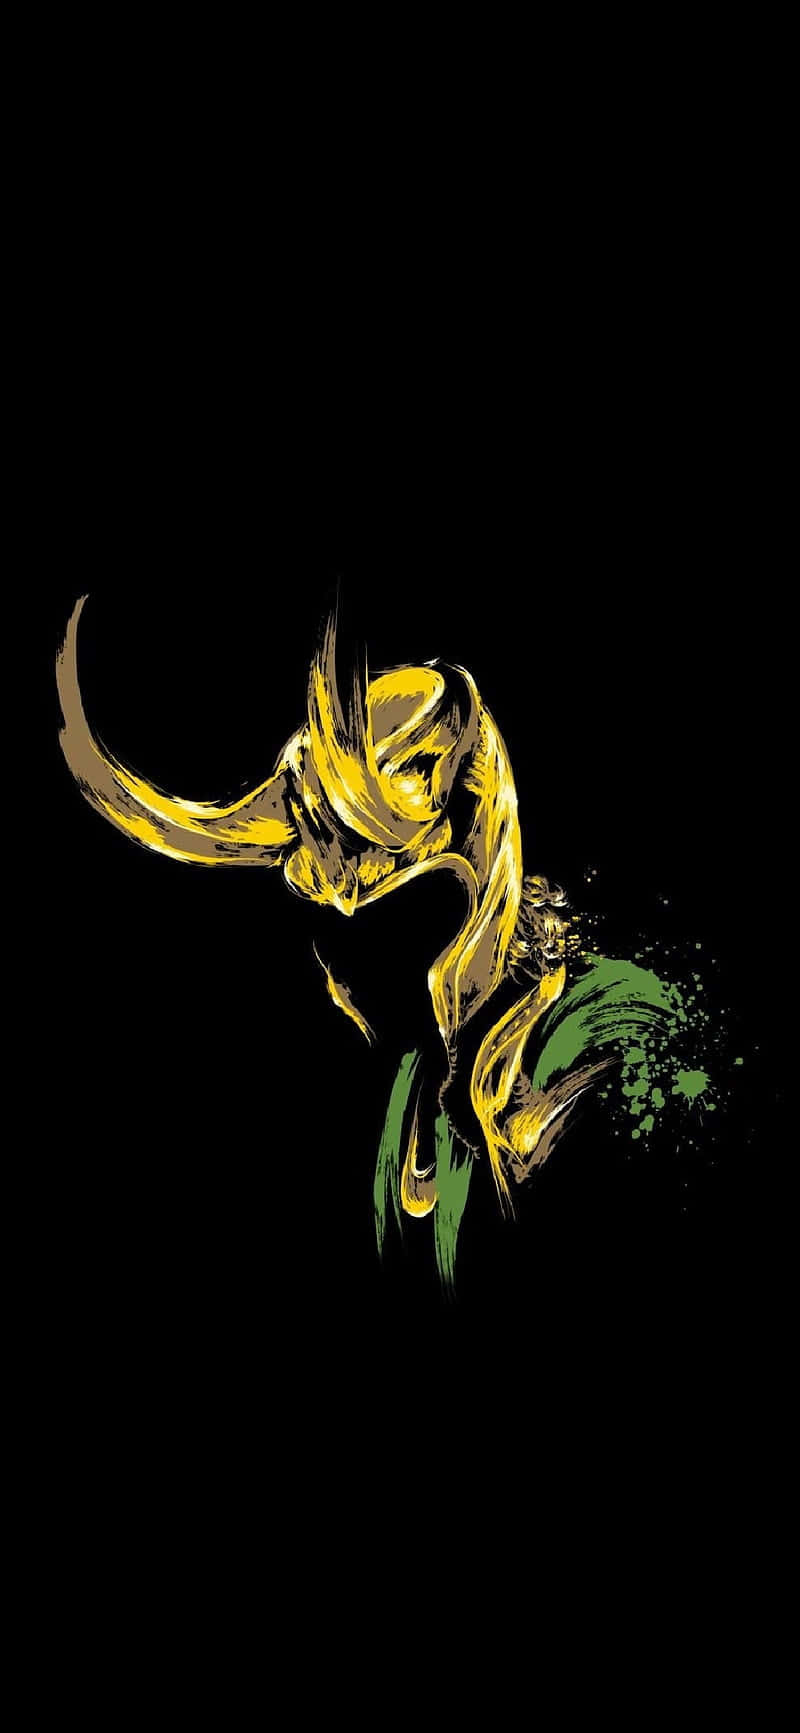 Marvel's Loki proklamerer sin magt og dominans. Wallpaper